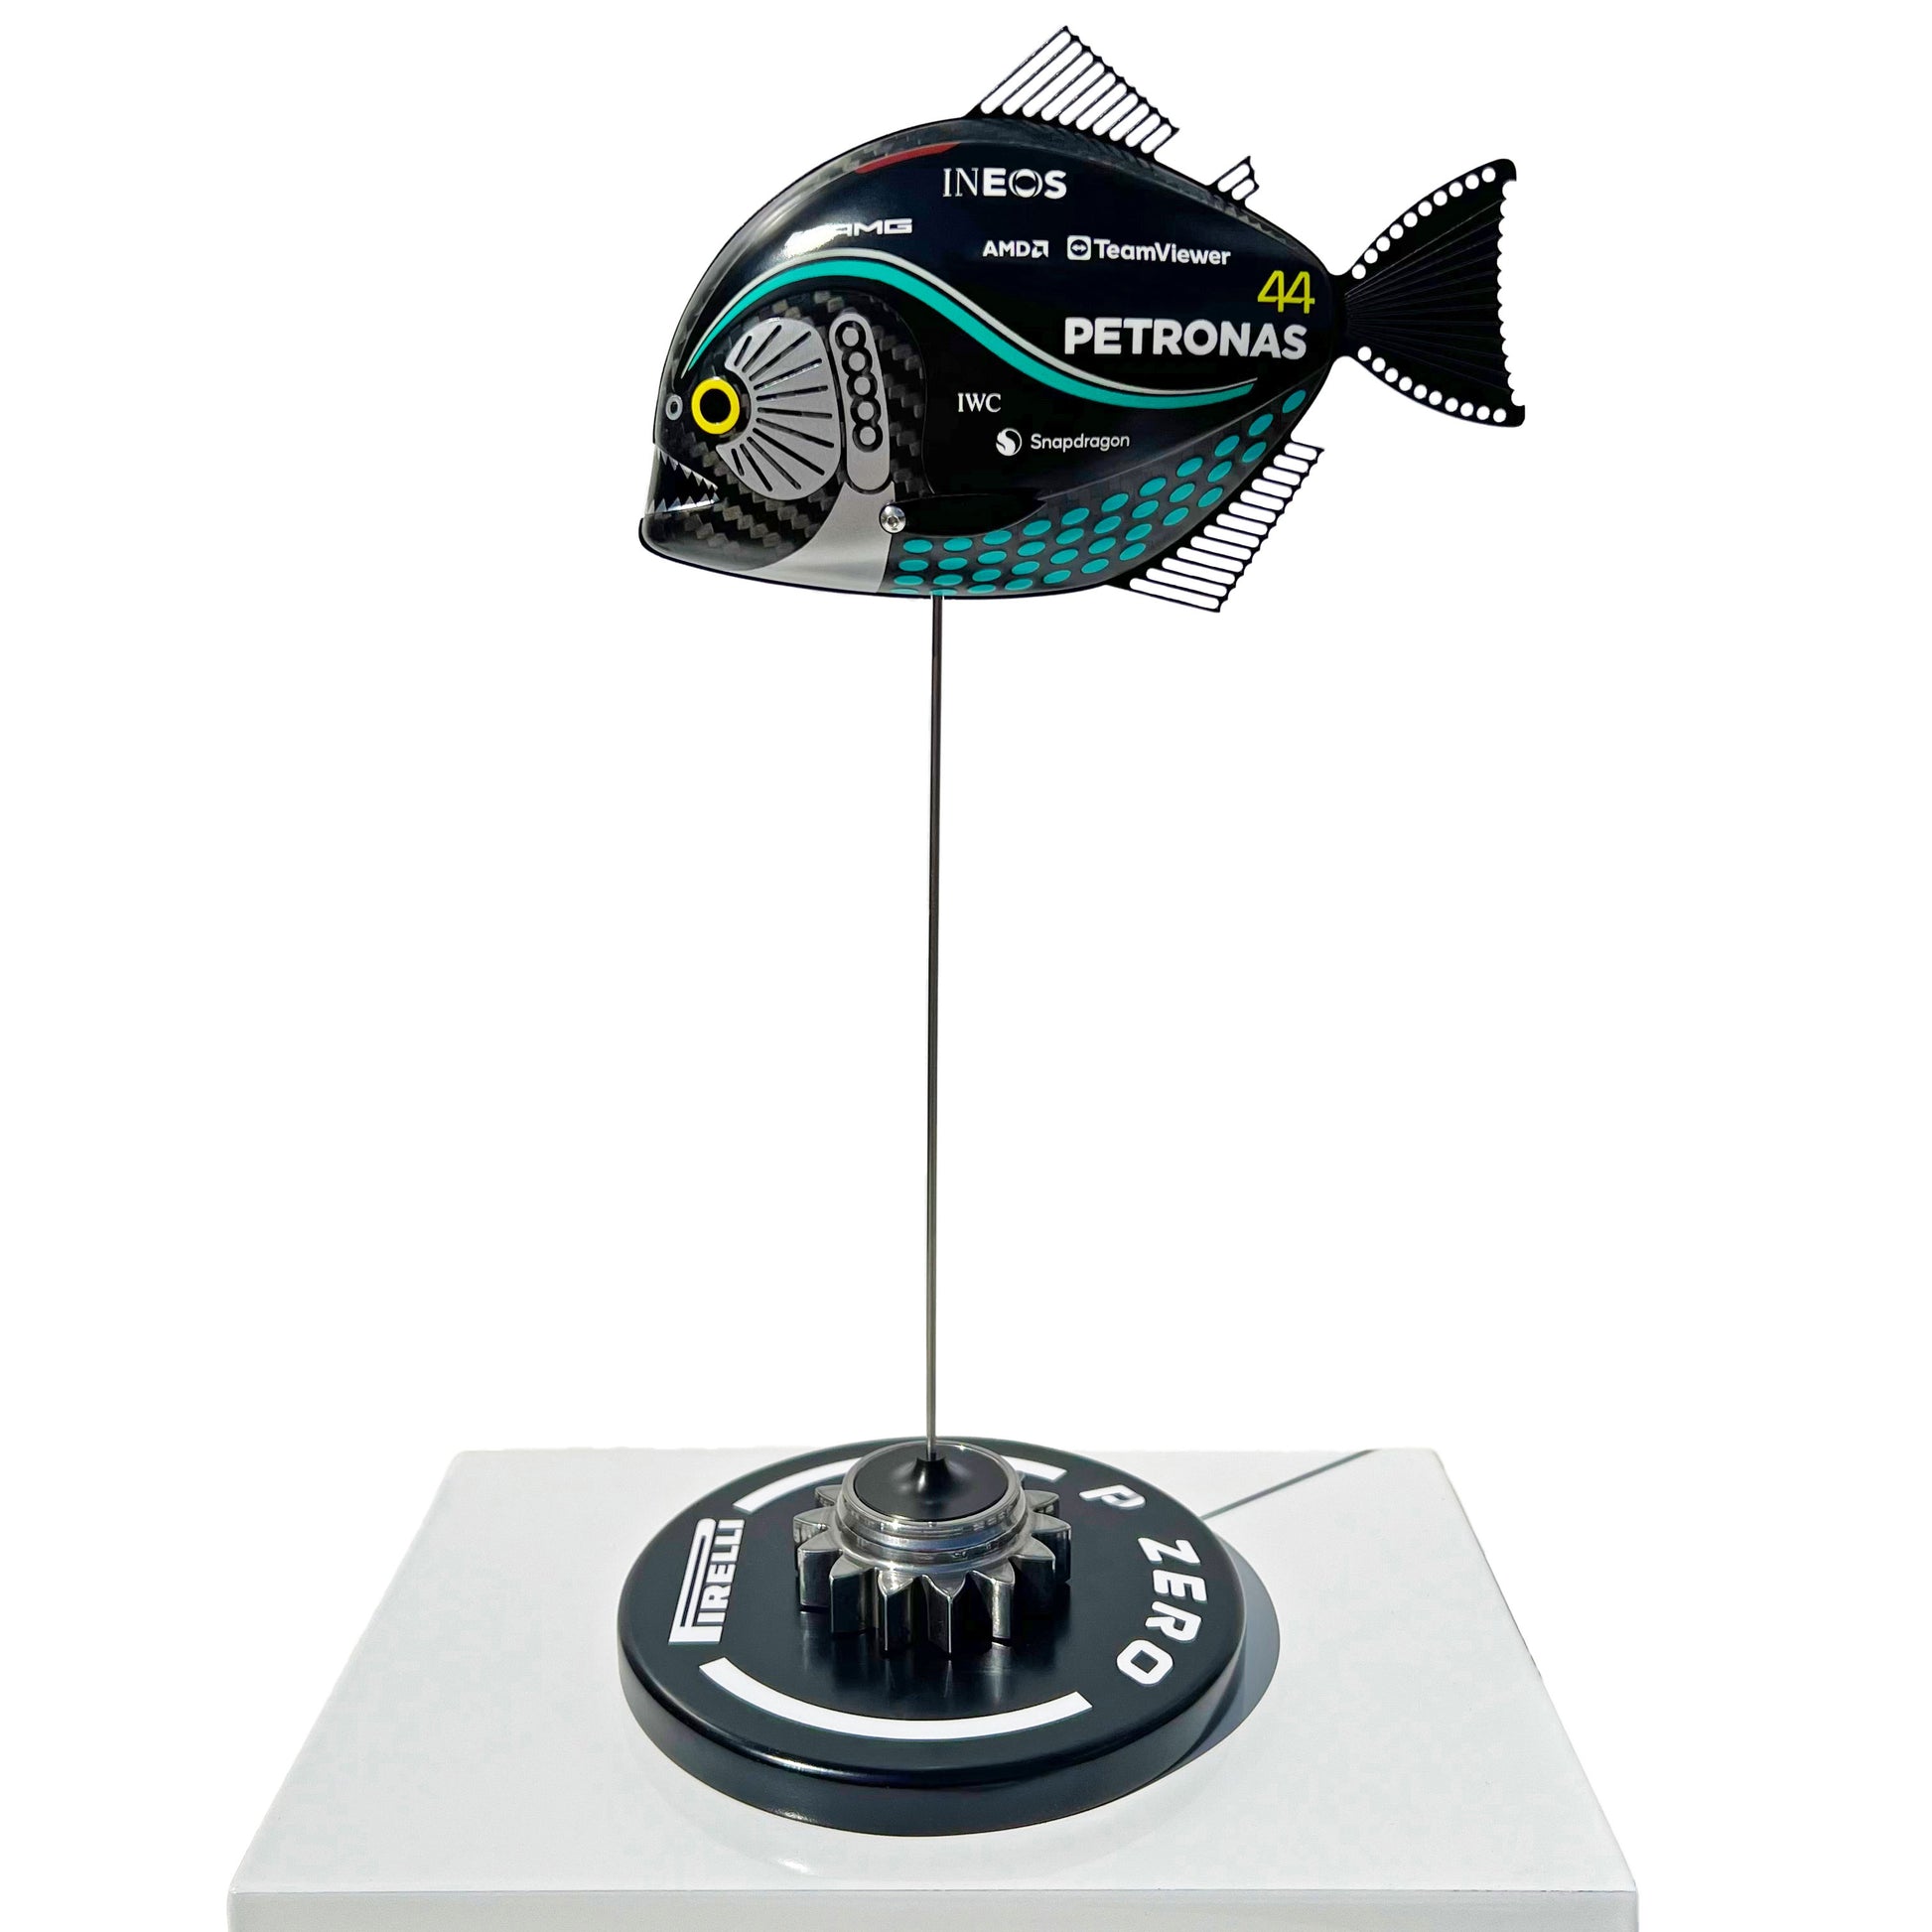 Carbon Fibre Piranha sculpture with 2023 Mercedes AMG Petronas Formula One Livery.